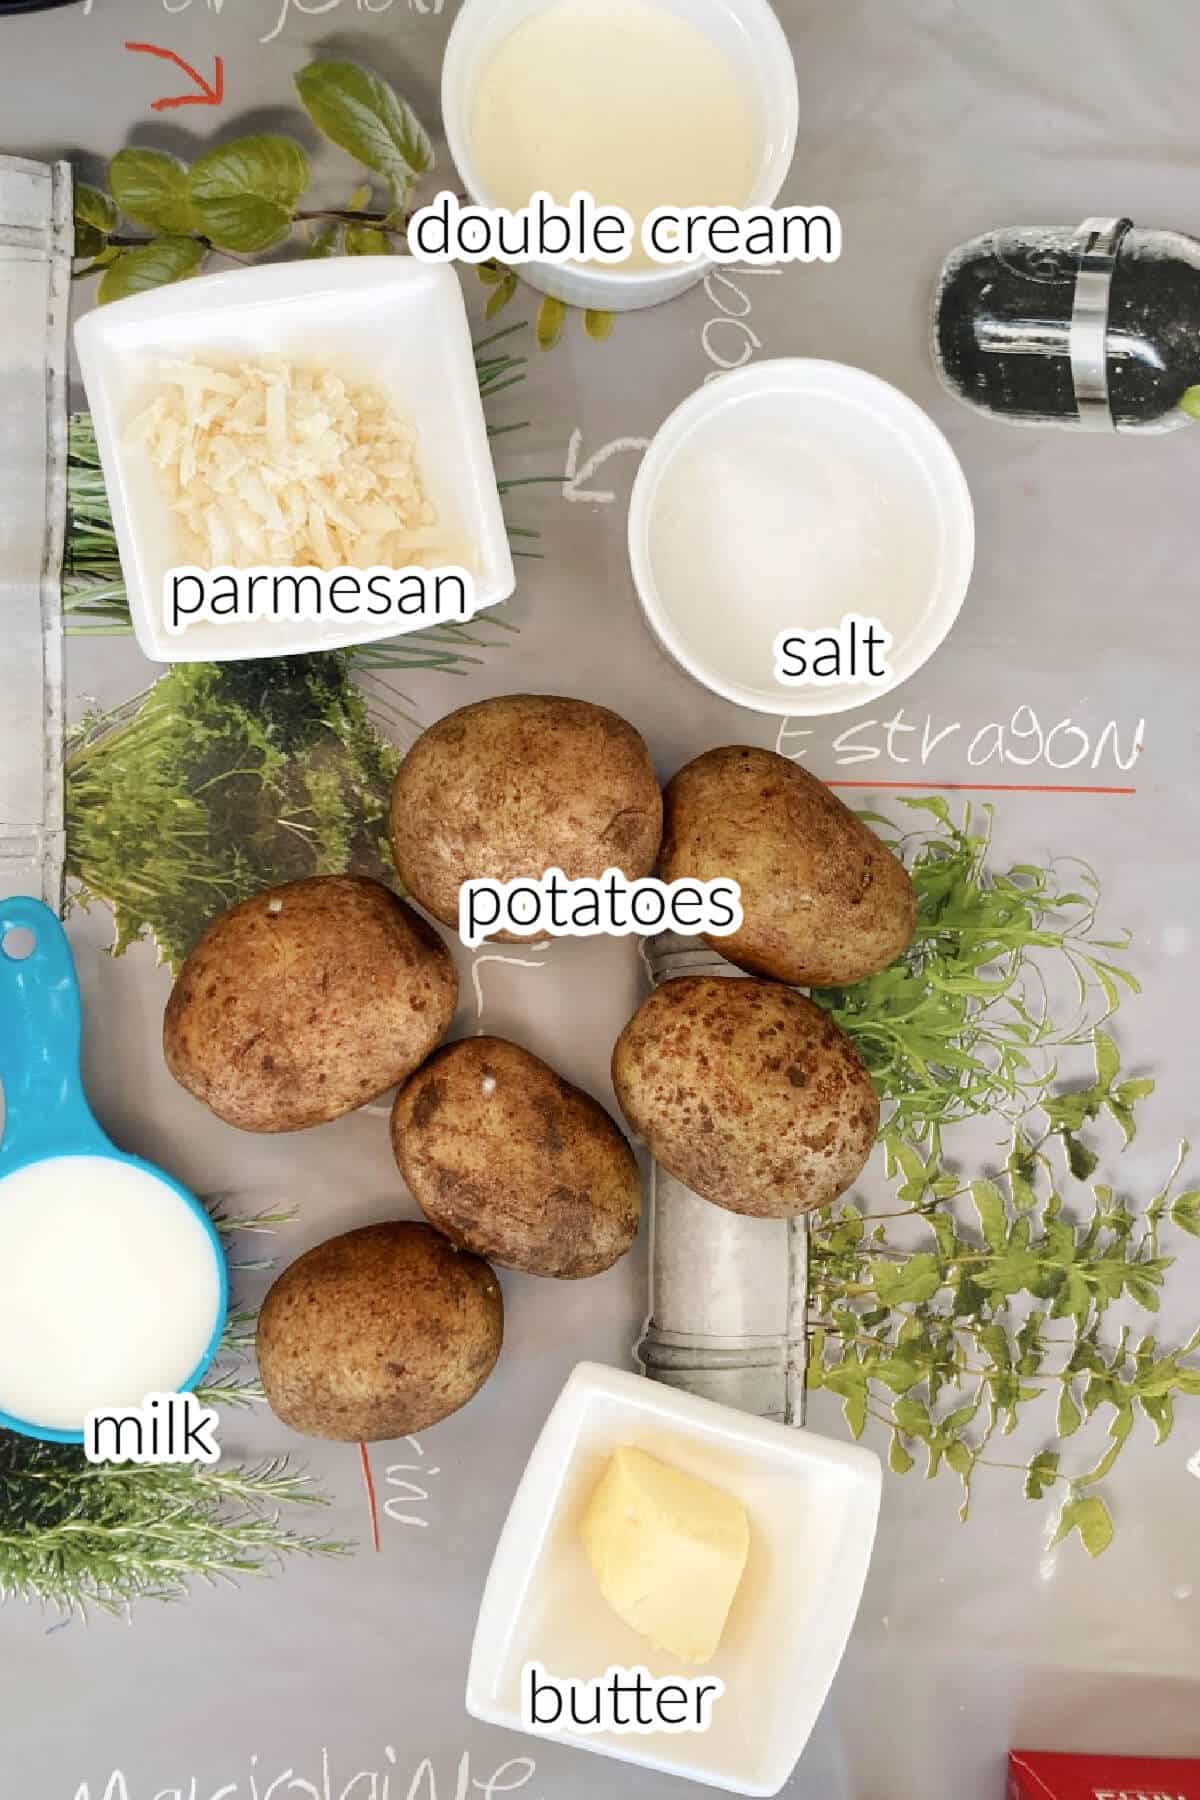 Ingredients needed to make parmesan mashed potatoes.